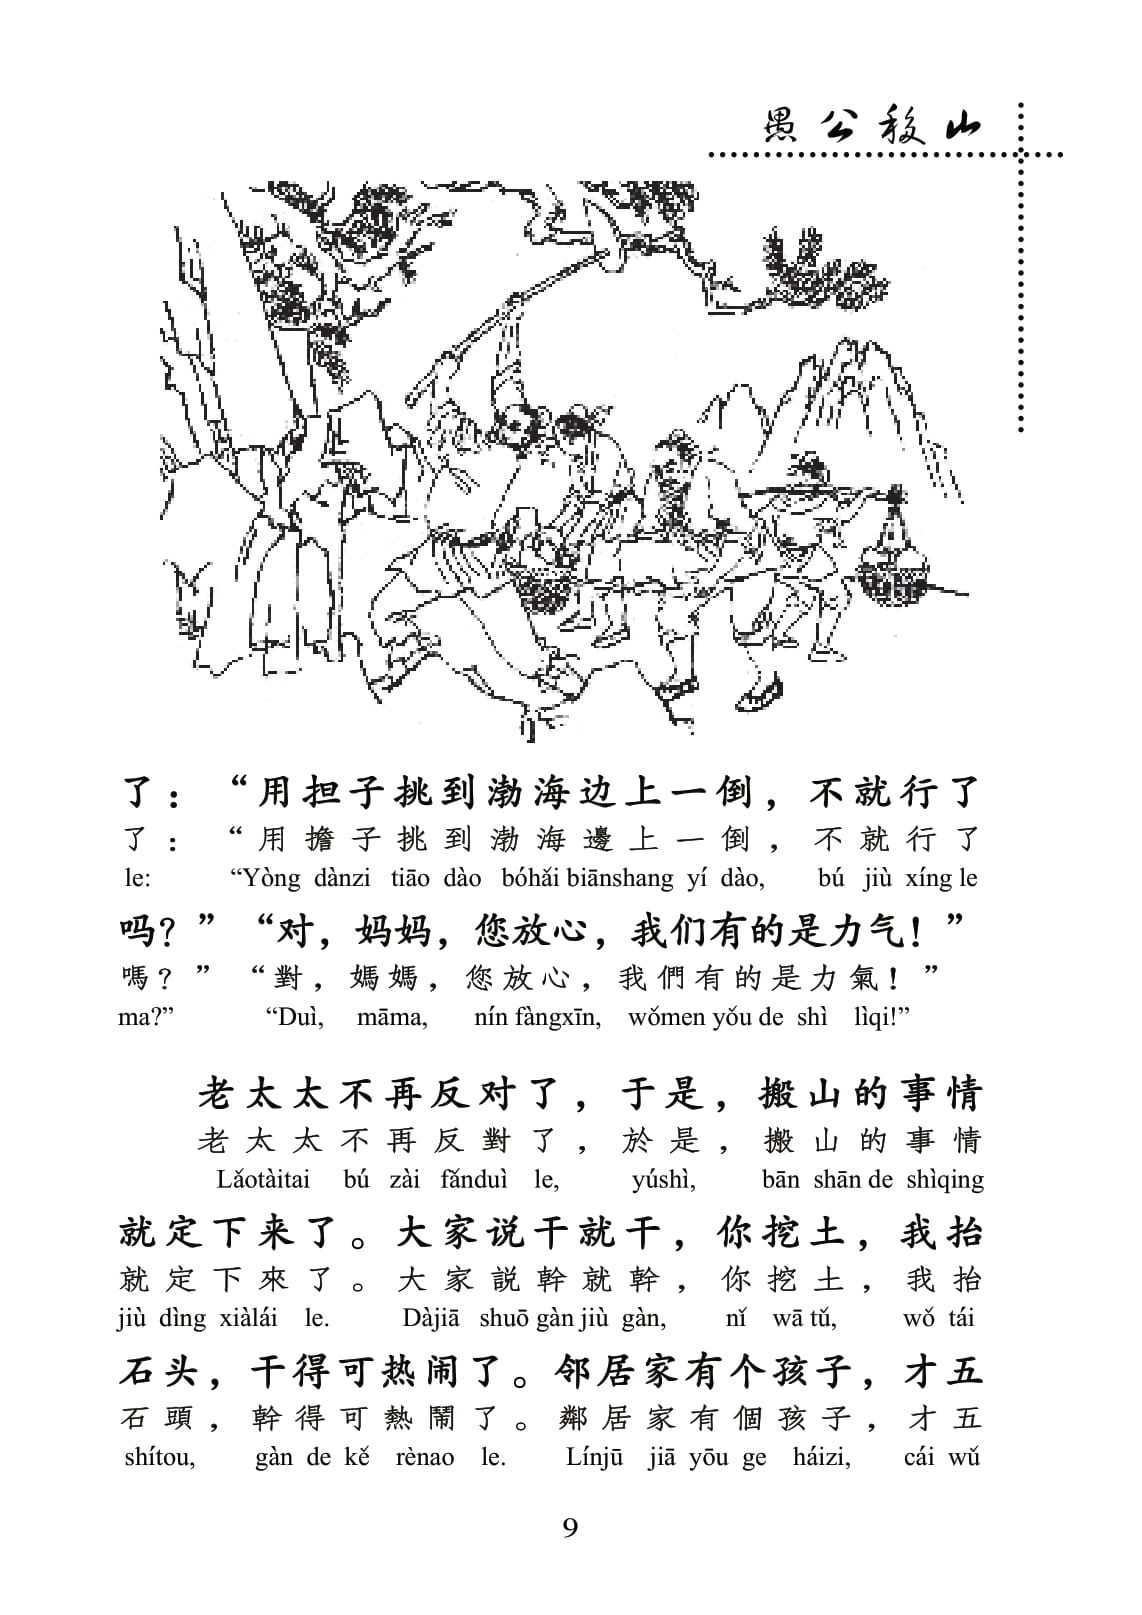 Kho Tàng Truyện Thần Thoại Cổ Đại Trung Quốc (Không CD)